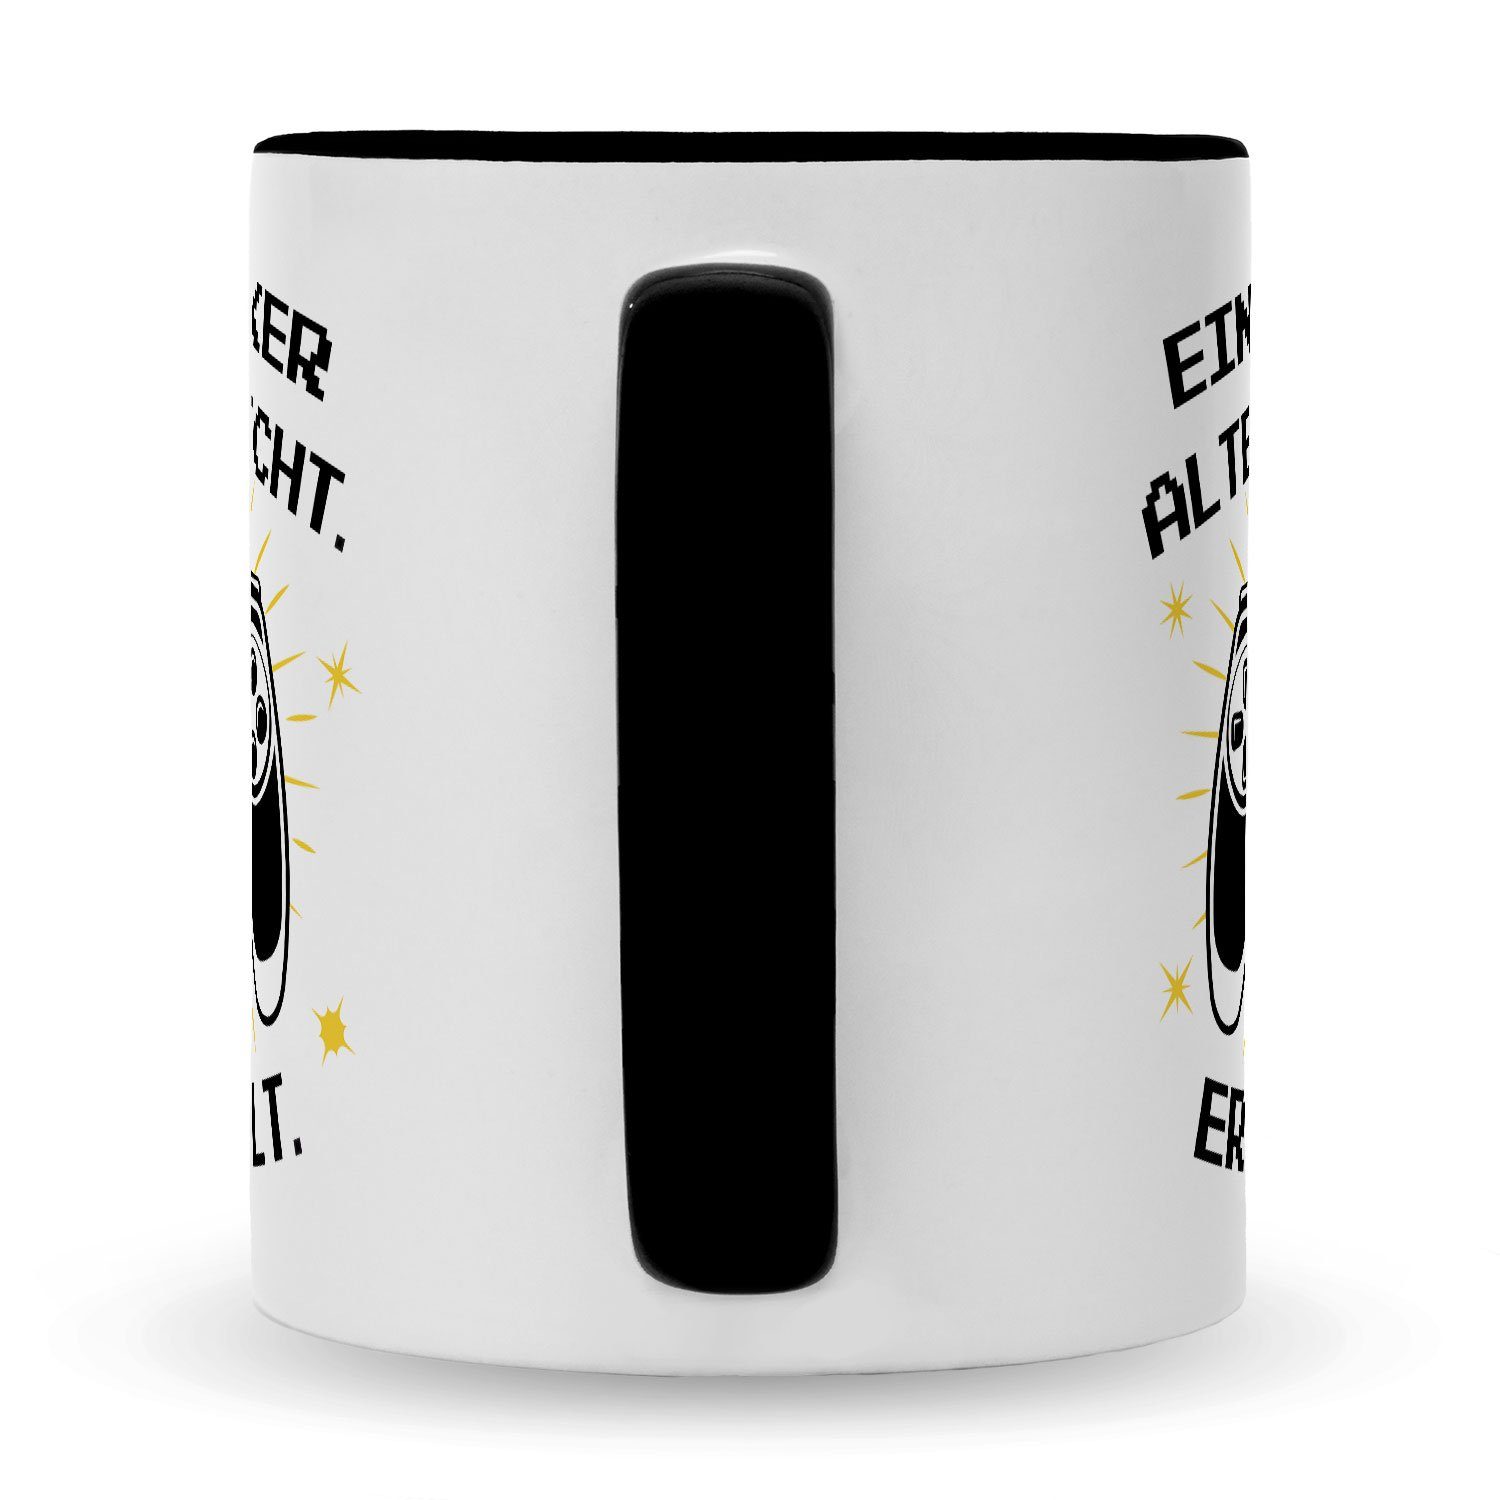 Zocker Ein Computer für für er levelt, Weiß Tasse Geschenk Zocker - nicht Spieler GRAVURZEILE Spruch altert Tasse mit Bedruckte Schwarz - Gamer & Konsolen